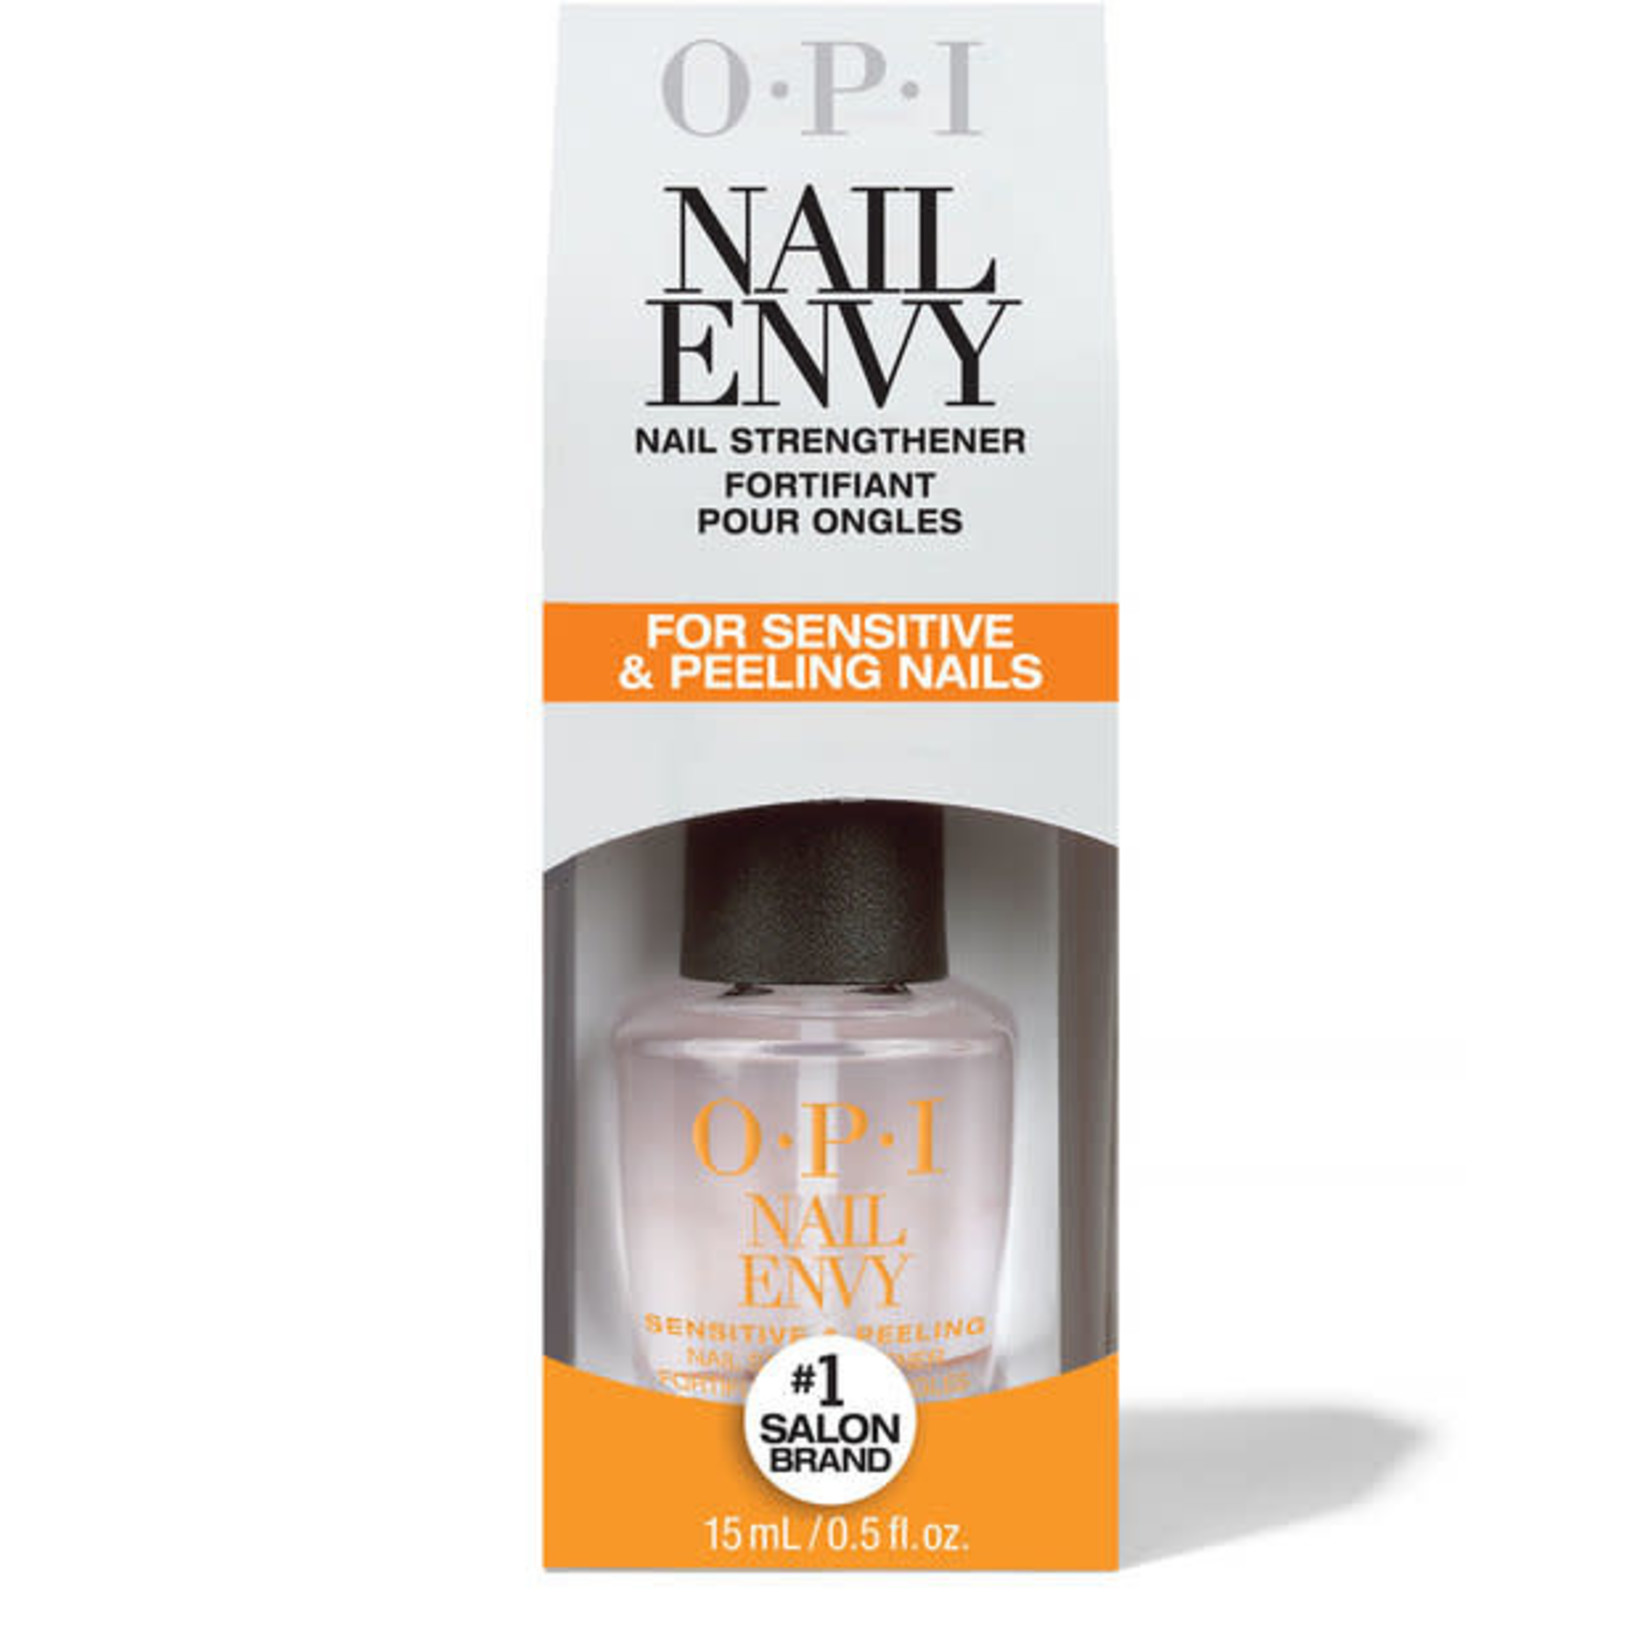 OPI NAIL ENVY NAIL STRENGTHENER For Sensitive & Peeling Nails